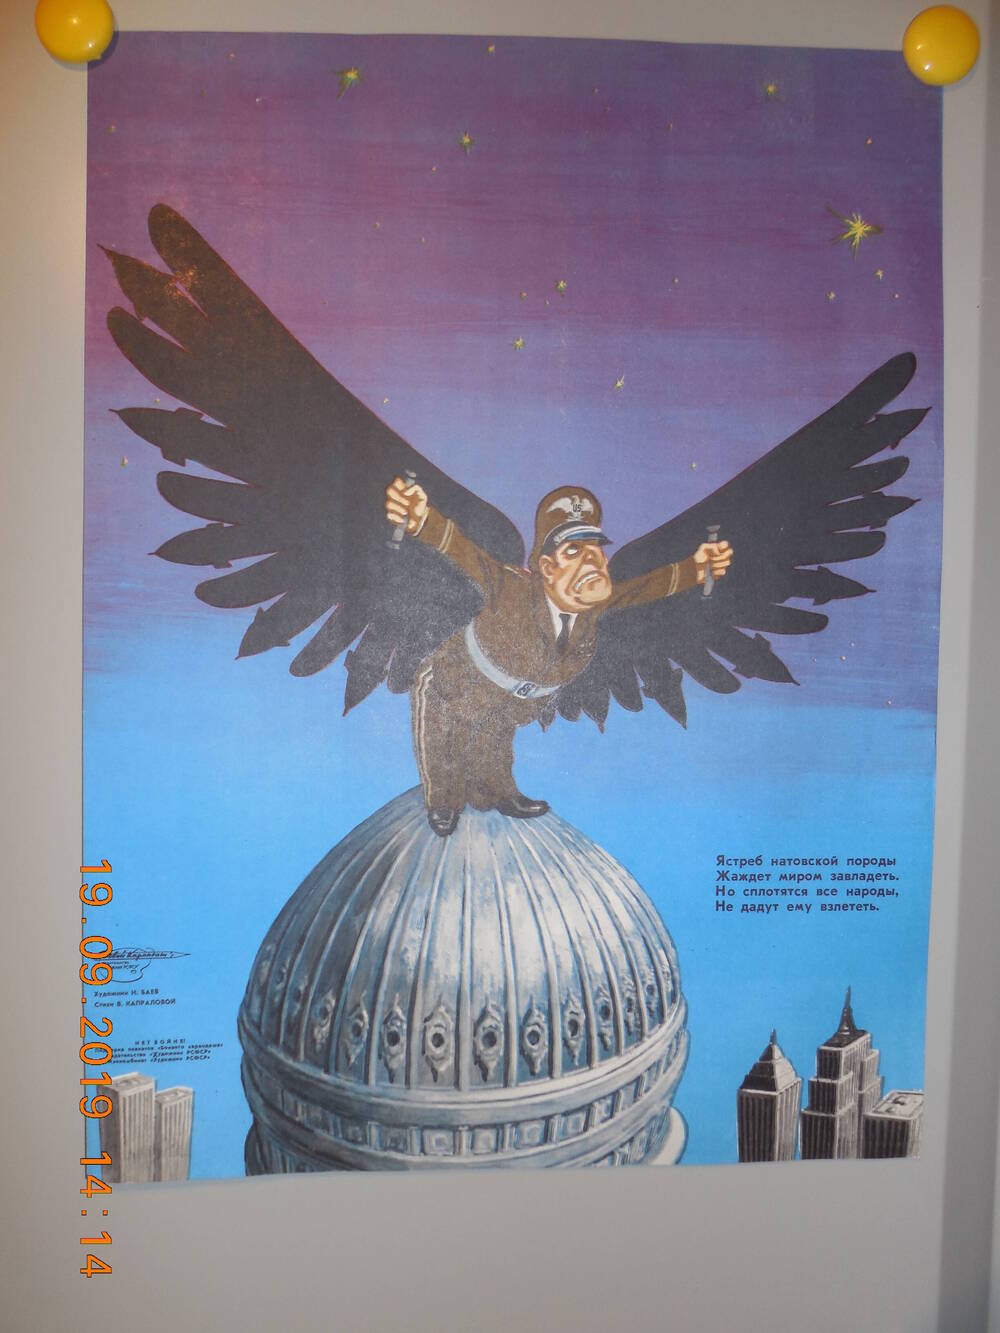 Плакат из подборки сатирических плакатов творческого объединения Боевой карандаш - НЕТ ВОЙНЕ
Ястреб натовской породы